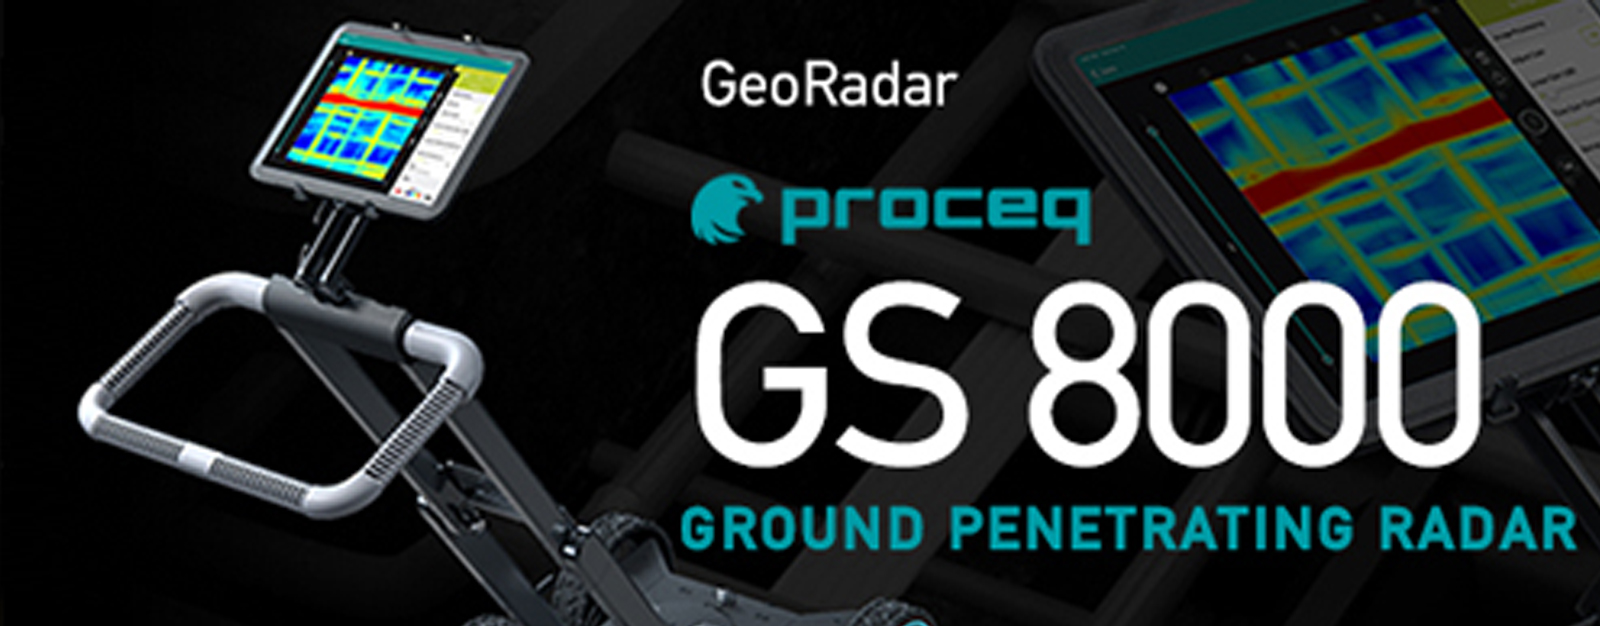 NEO Proceq GS8000 - Εντοπισμός αντικειμένων και πλήρη αποτύπωση κάτω από την επιφάνεια 